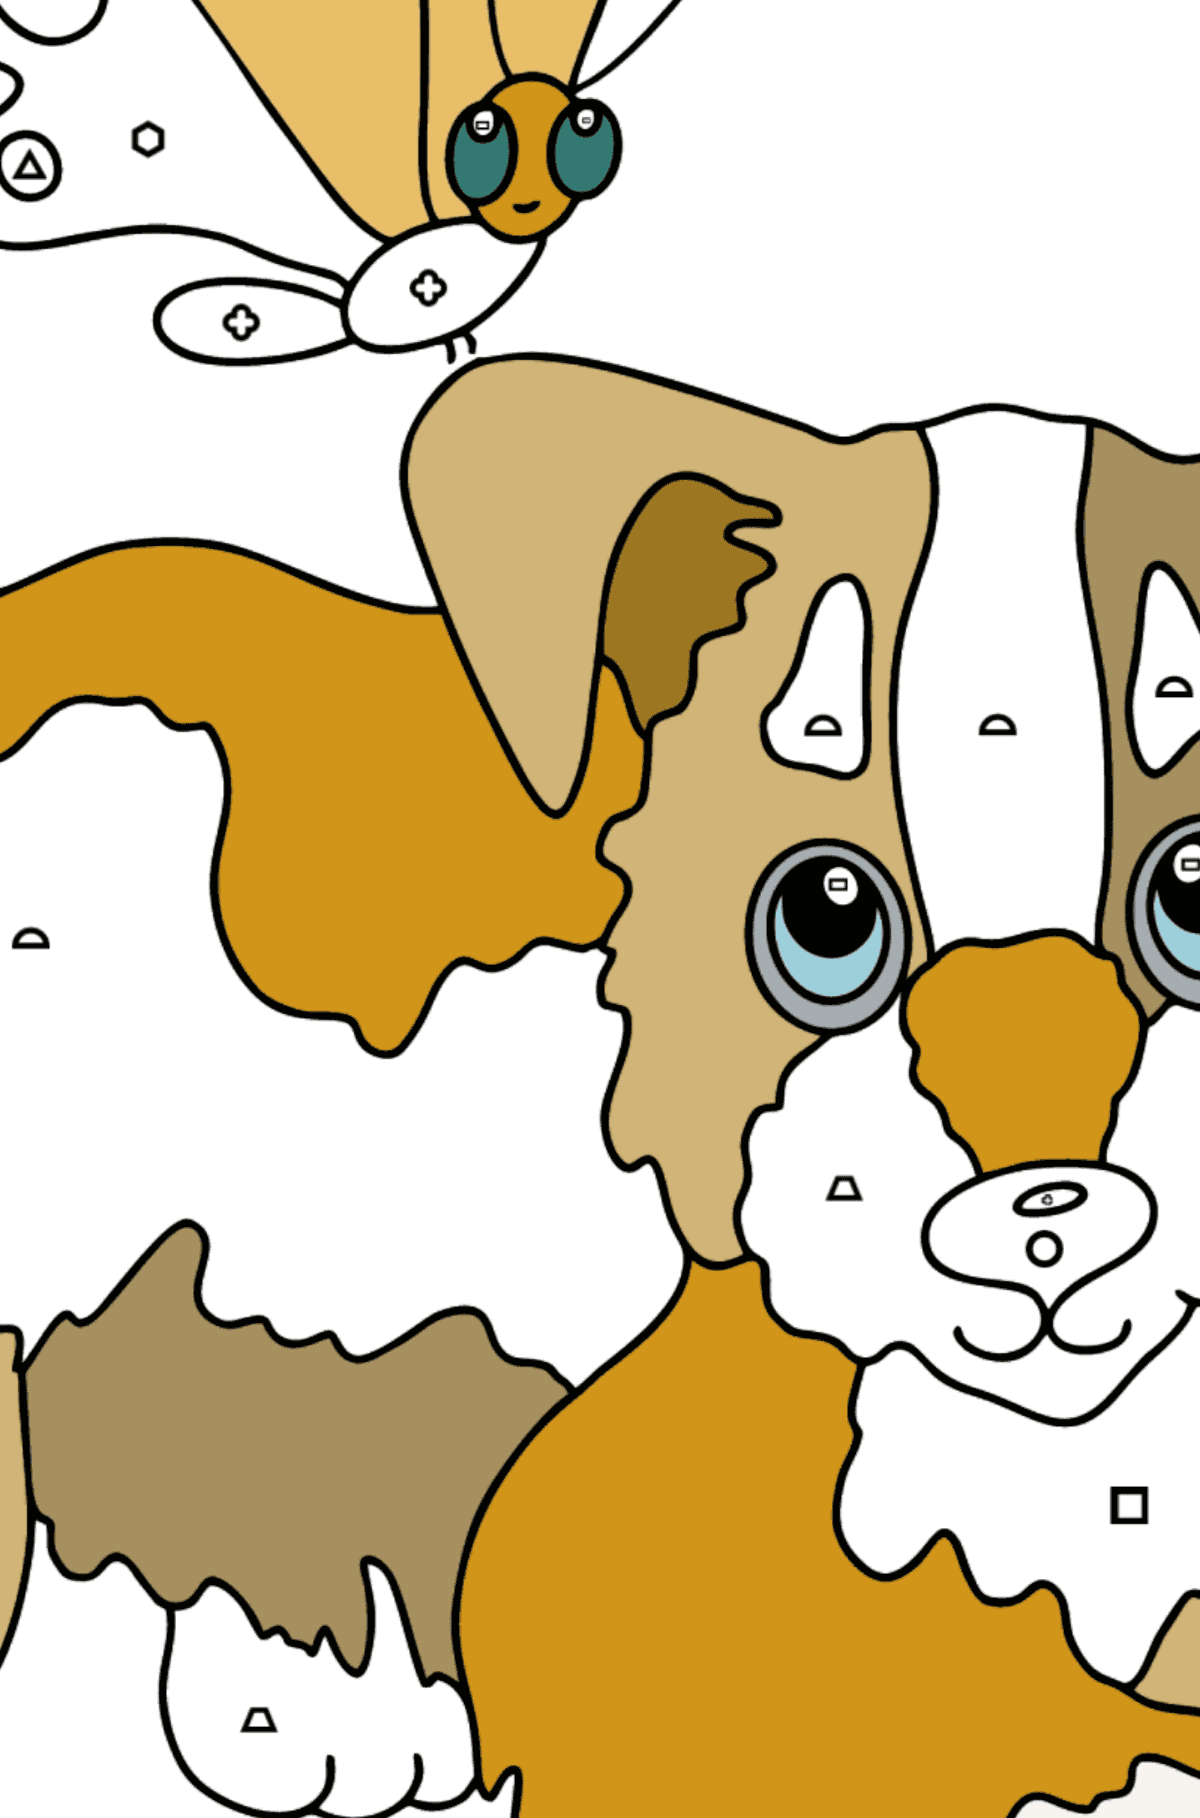 Раскраска собака - Картинка высокого качества для Детей